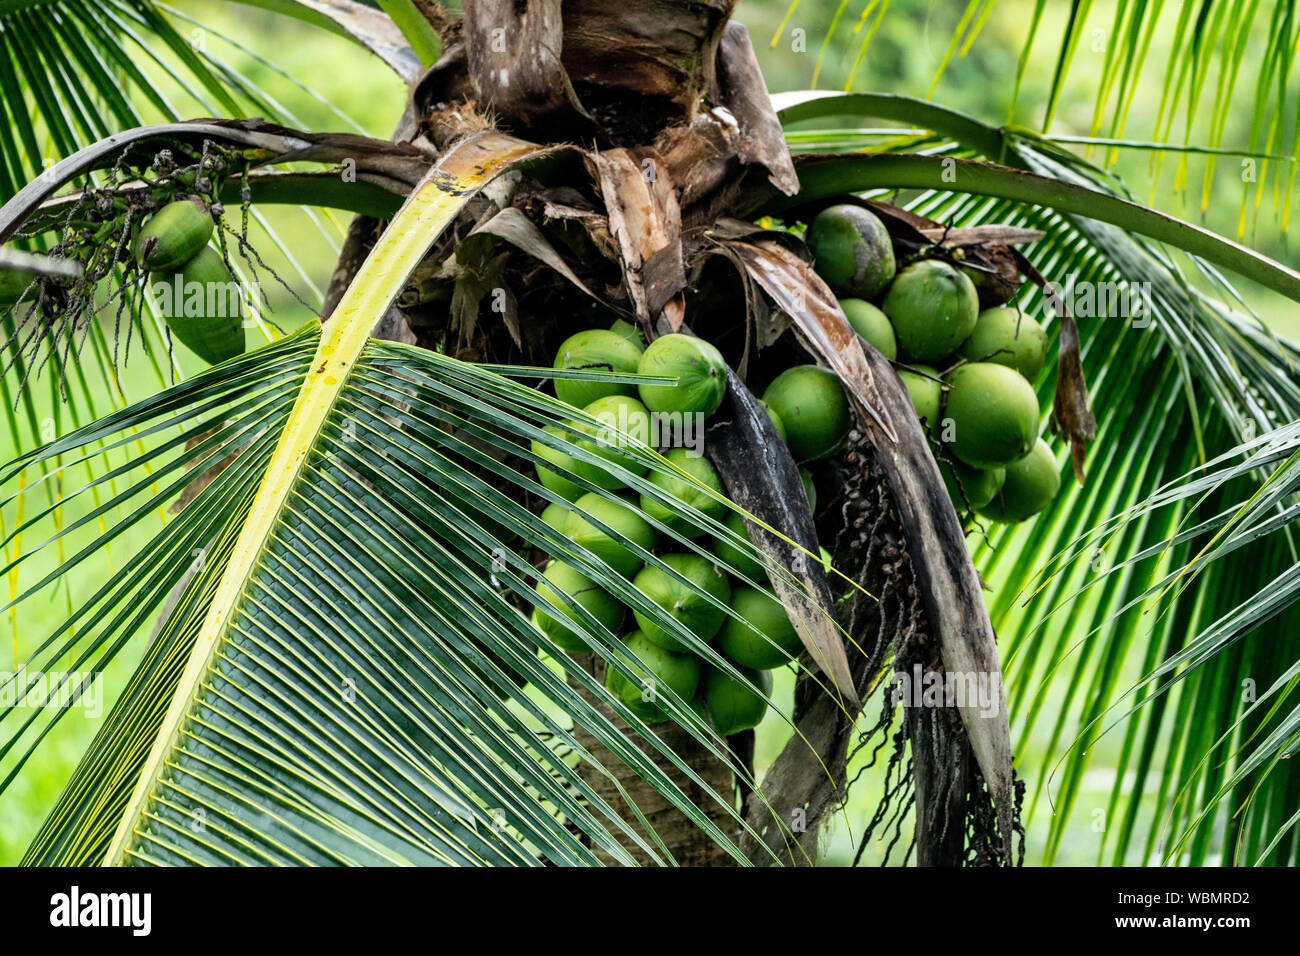 coconut tree (Cocos nucifera) Stock Photo